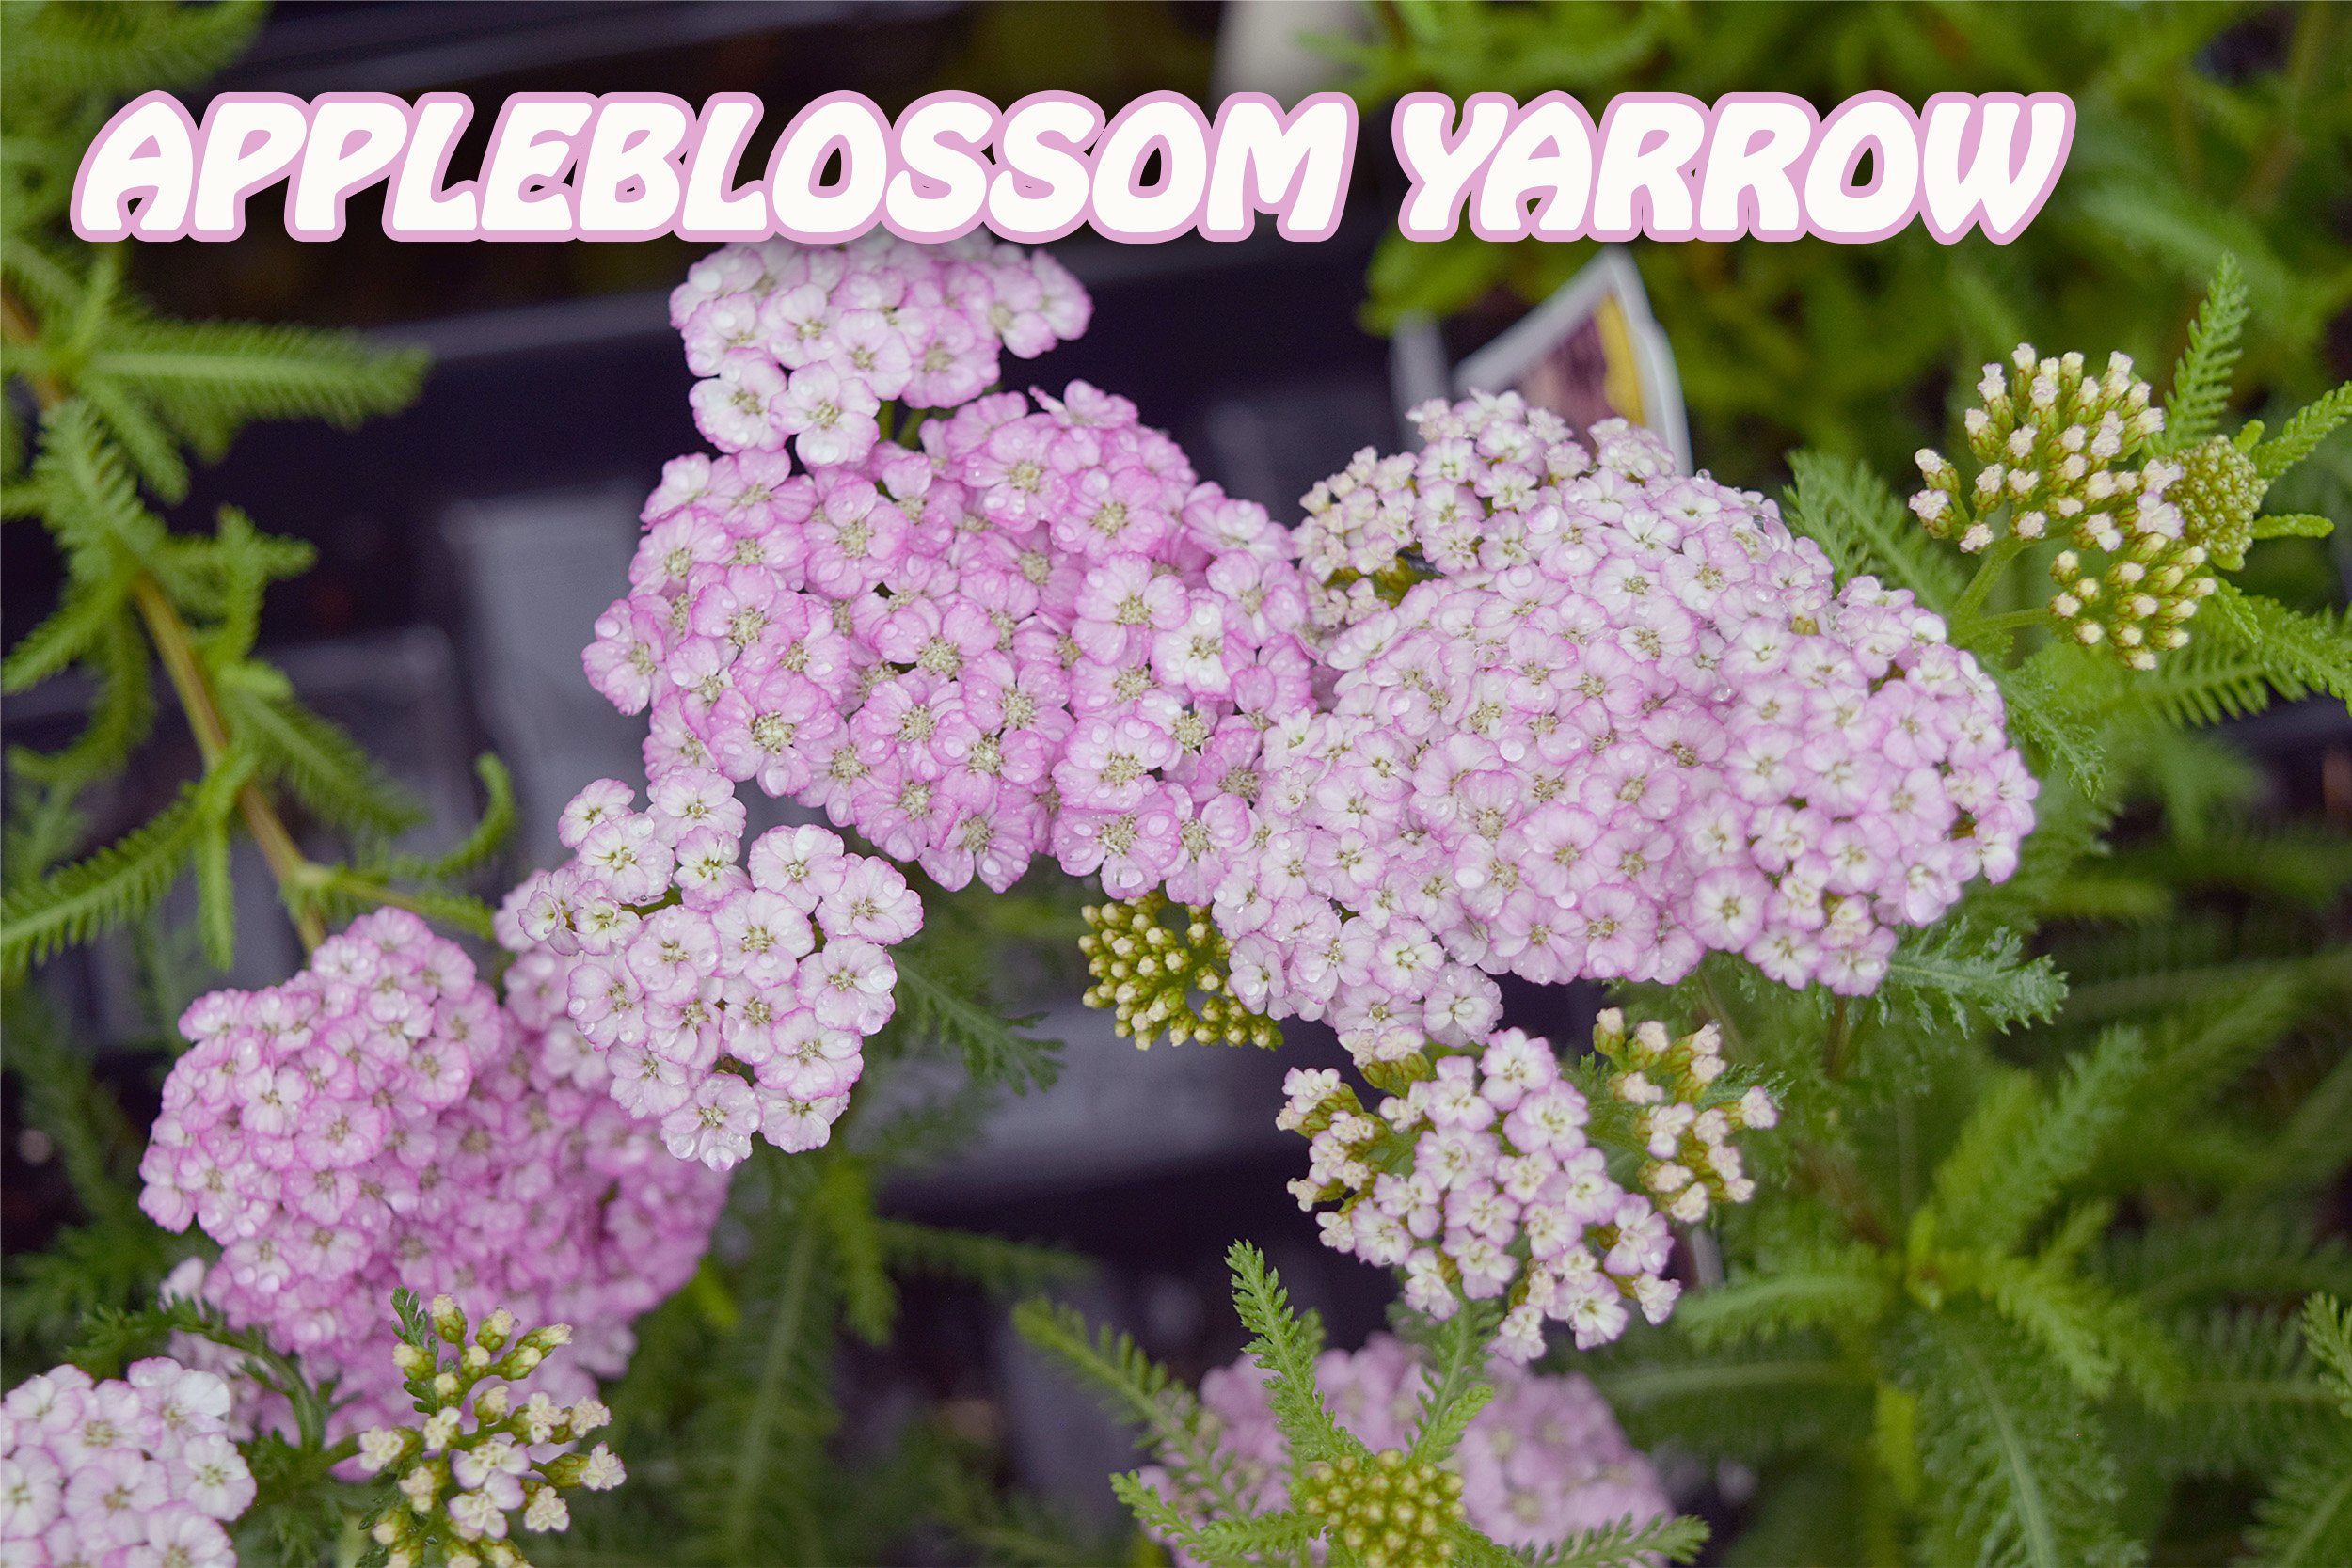 appleblossom yarrow.jpg